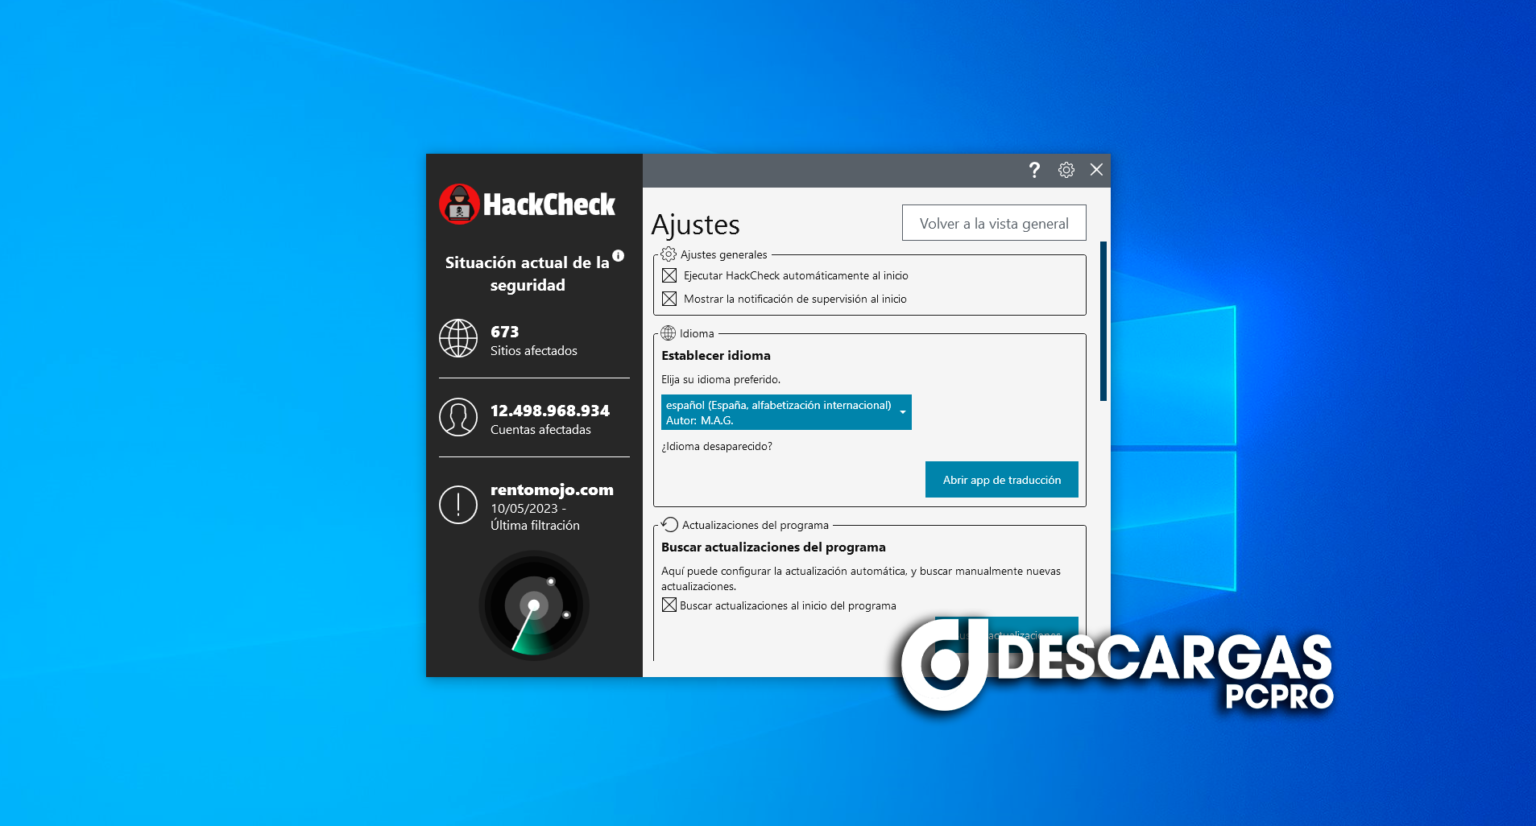 free instals Abelssoft HackCheck 2023 v5.03.49204